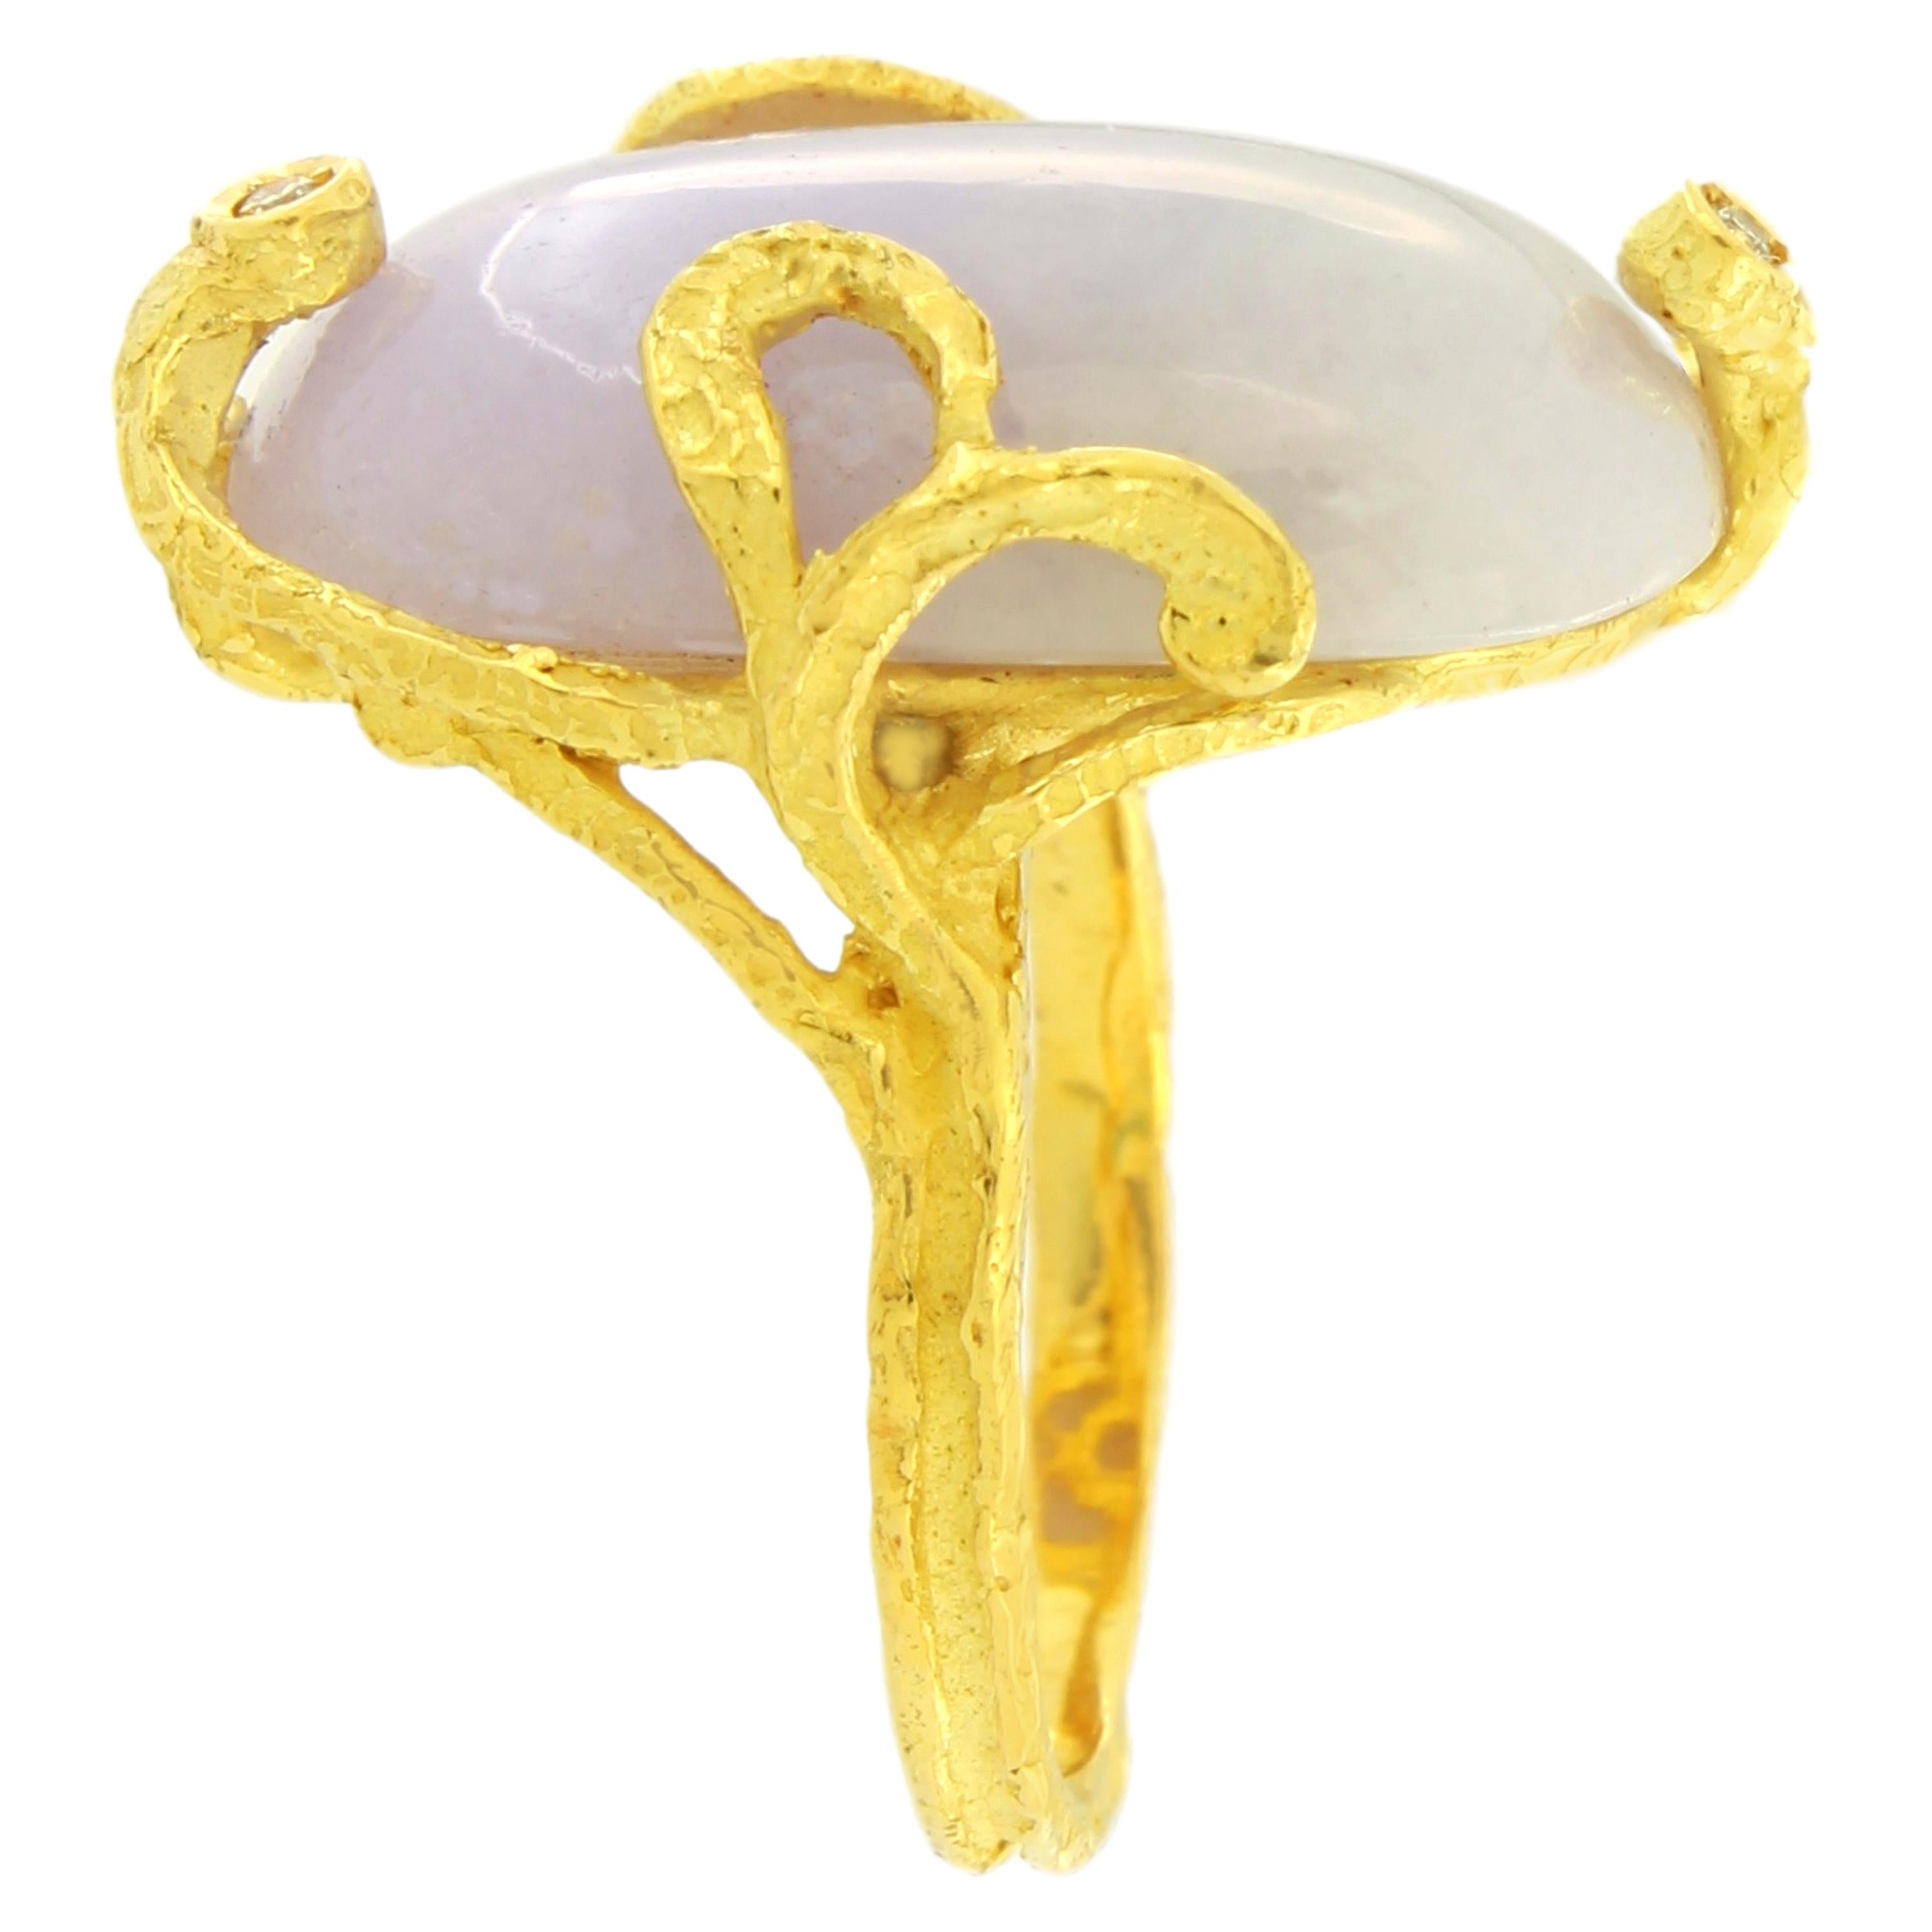 Classical Roman Sacchi Lavender Jade Gemstone 18 Karat Satin Yellow Gold Cocktail Ring